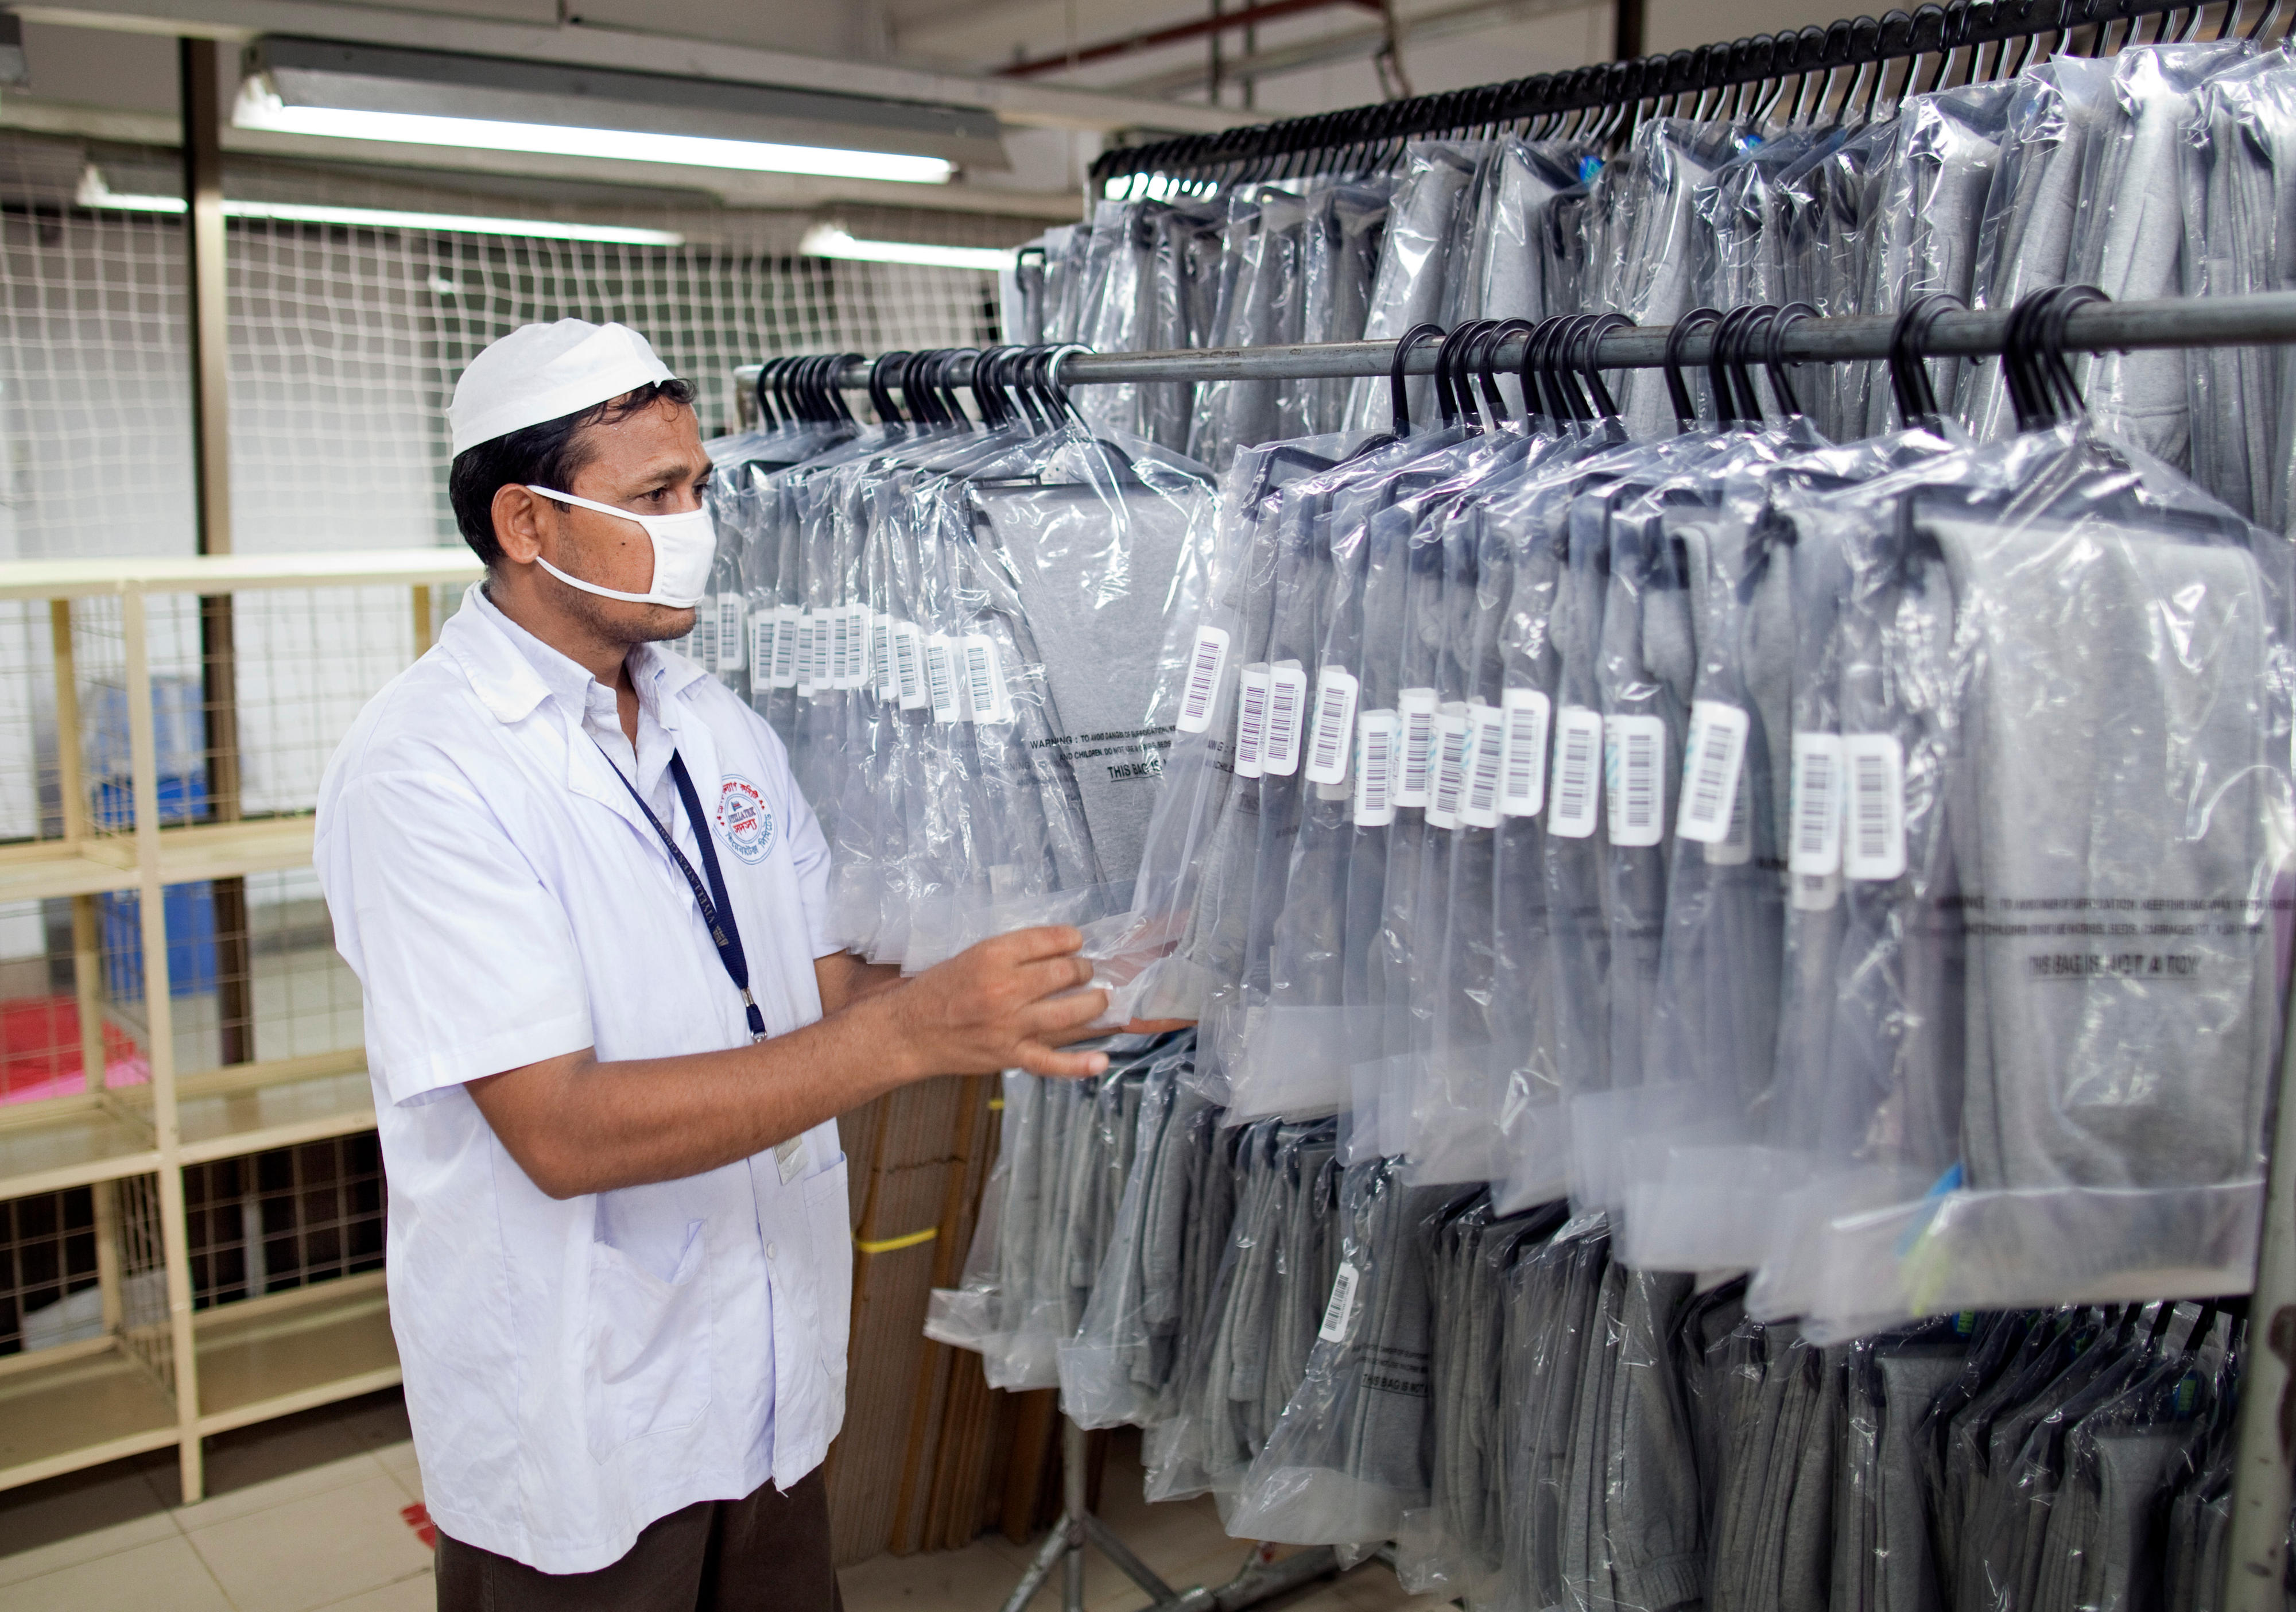 Endkontrolle der Kleidungsstücke in einer Textilfabrik in Bangladesch